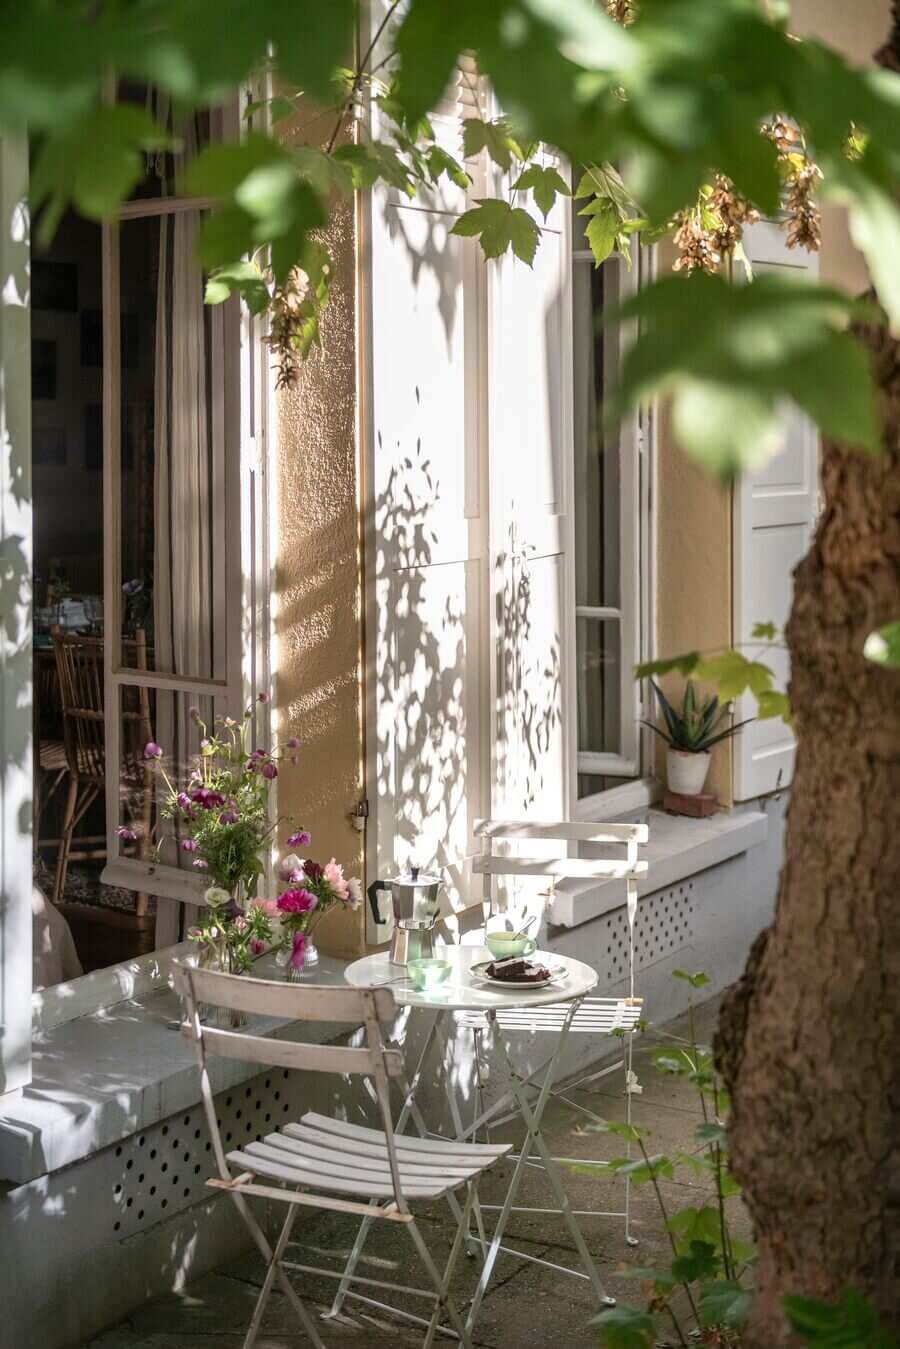 Hình ảnh góc vườn nhỏ bên ngoài căn hộ ở tầng trệt với cây cối tươi xanh, những tia nắng len mình qua tán lá in bóng trên những bức tường,... Thêm vào một bộ bàn ghế ngoài trời, tách trà, cafe, bánh ngọt, làm nên góc thư giãn thật 'chill', thể hiện rõ nét phong cách Paris lãng mạn.